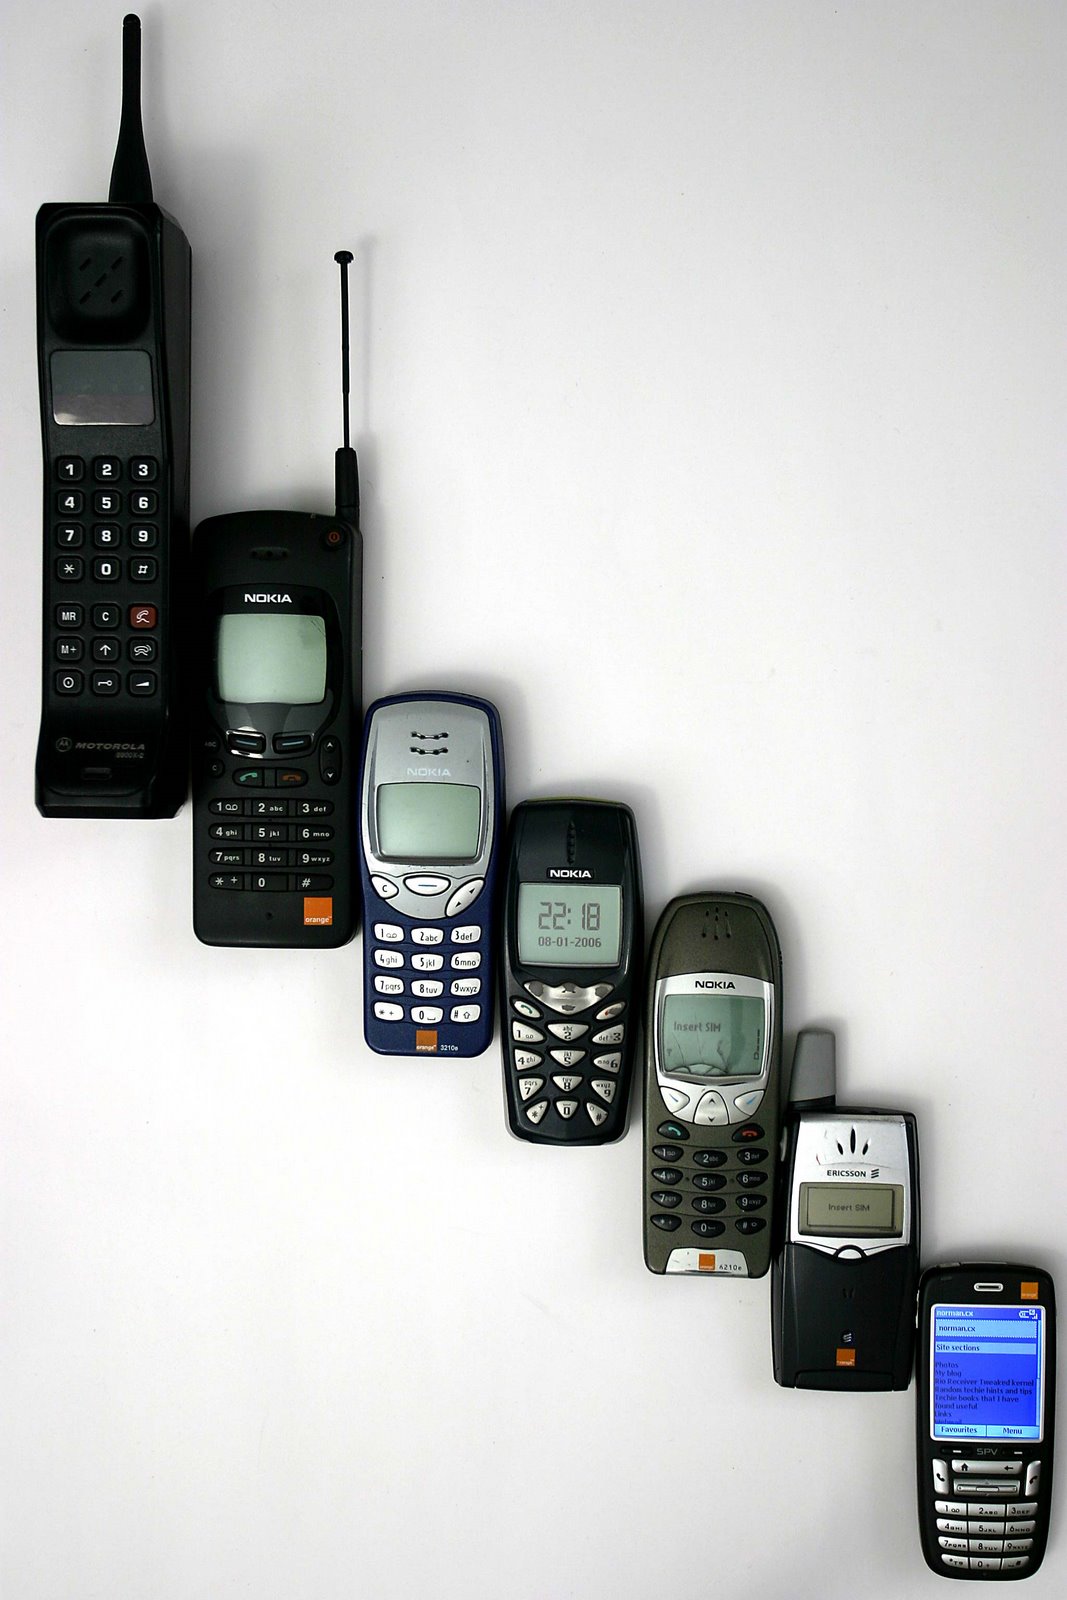 [Mobile_phone_evolution.jpg]